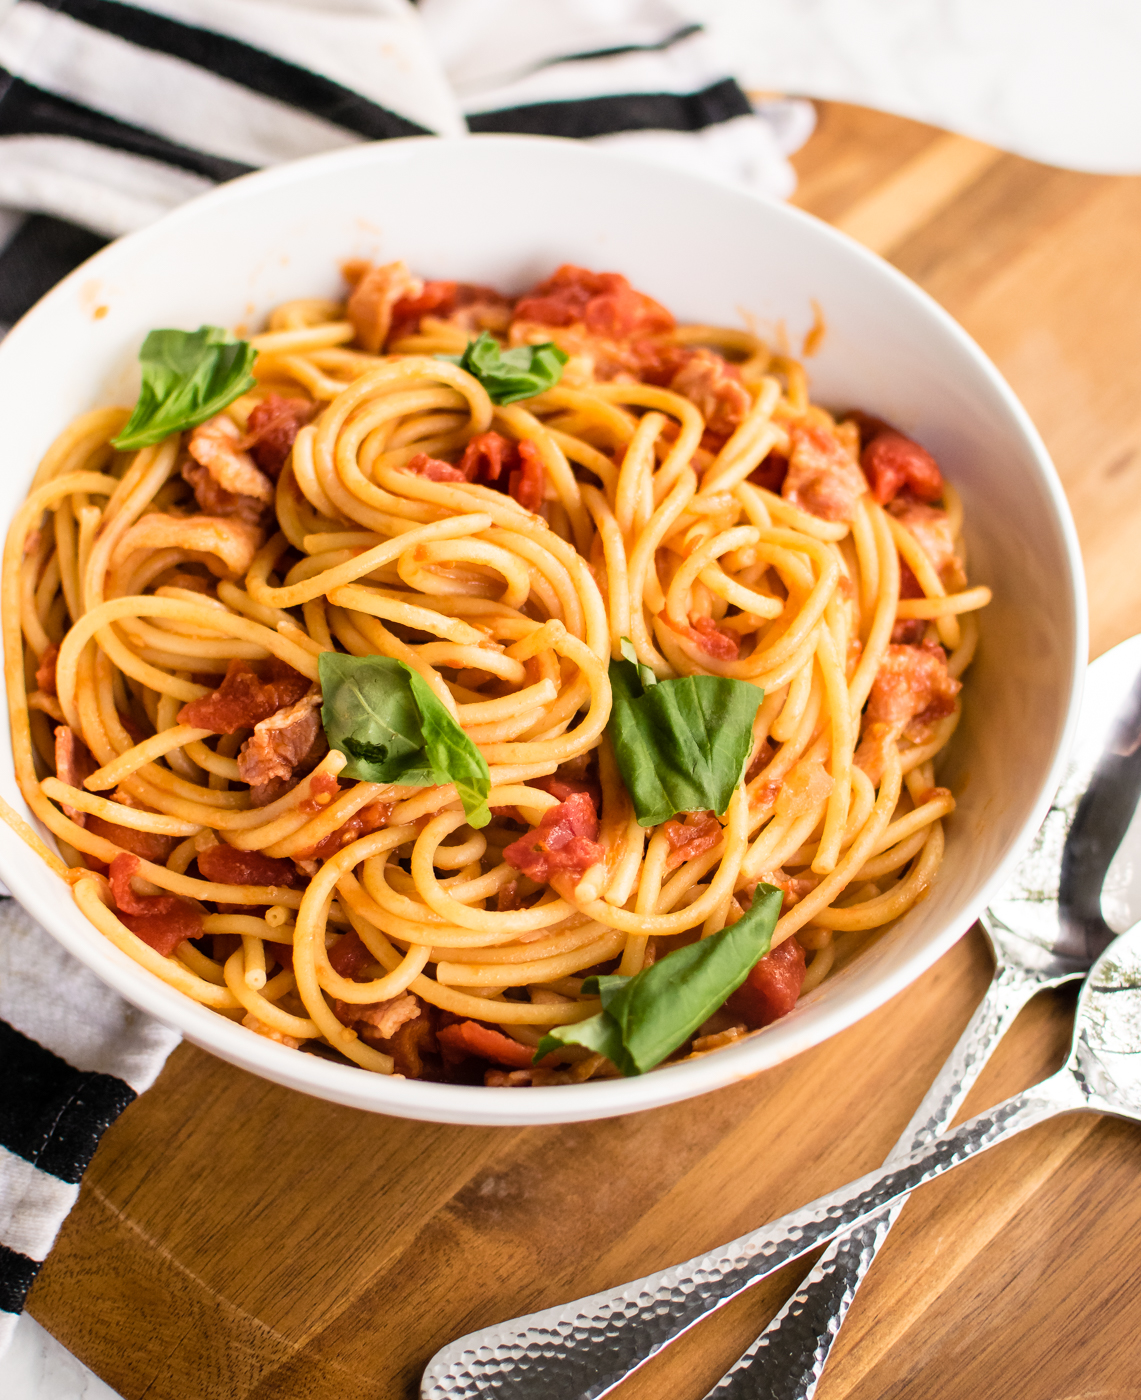 Date 06/26  Mì Spaghetti Barilla số 3 - 500g của Ý